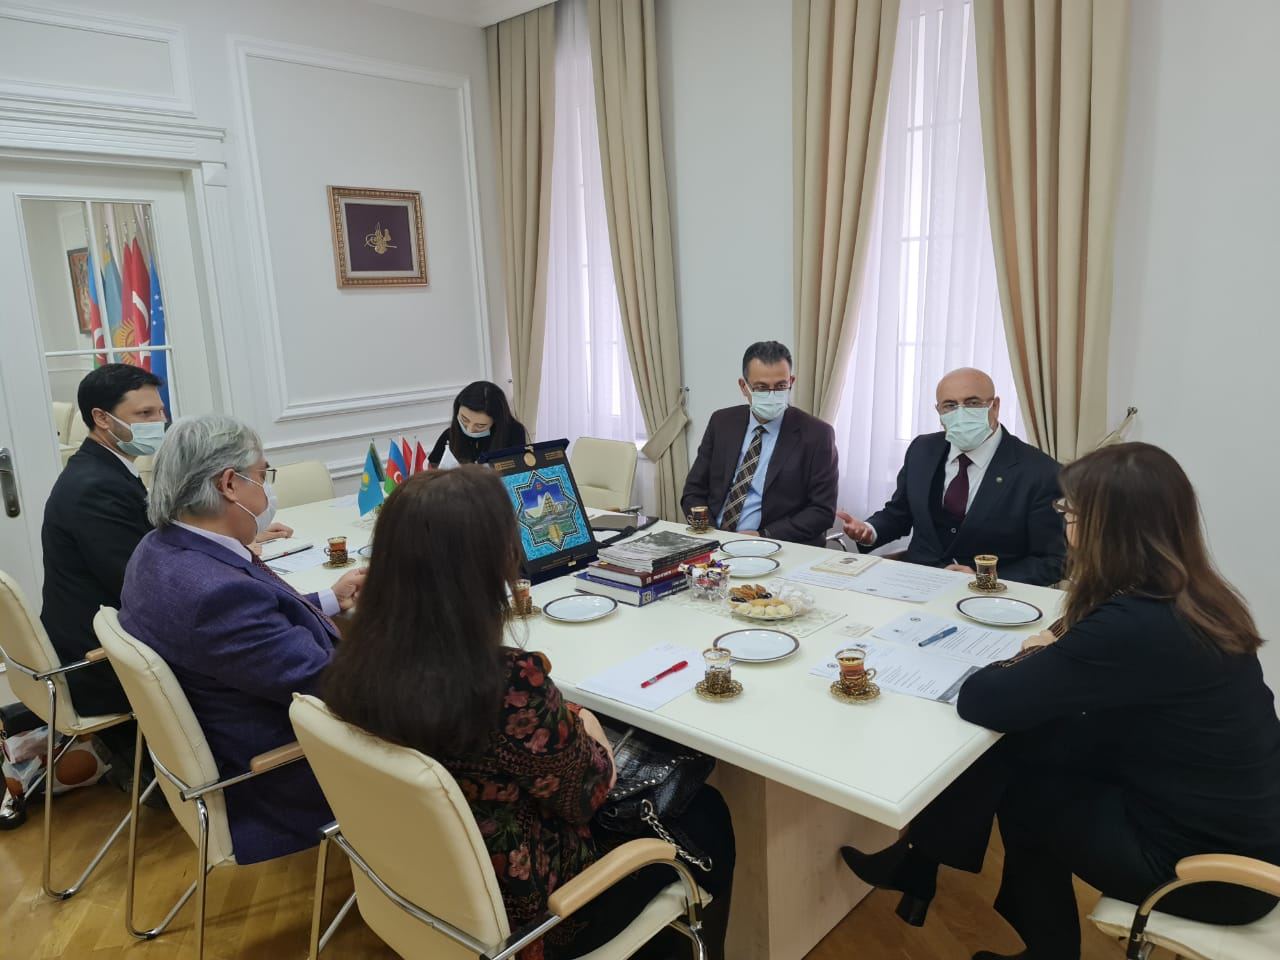 В Баку прошла встреча с делегацией Союза инженеров и архитекторов тюркского мира (ФОТО)